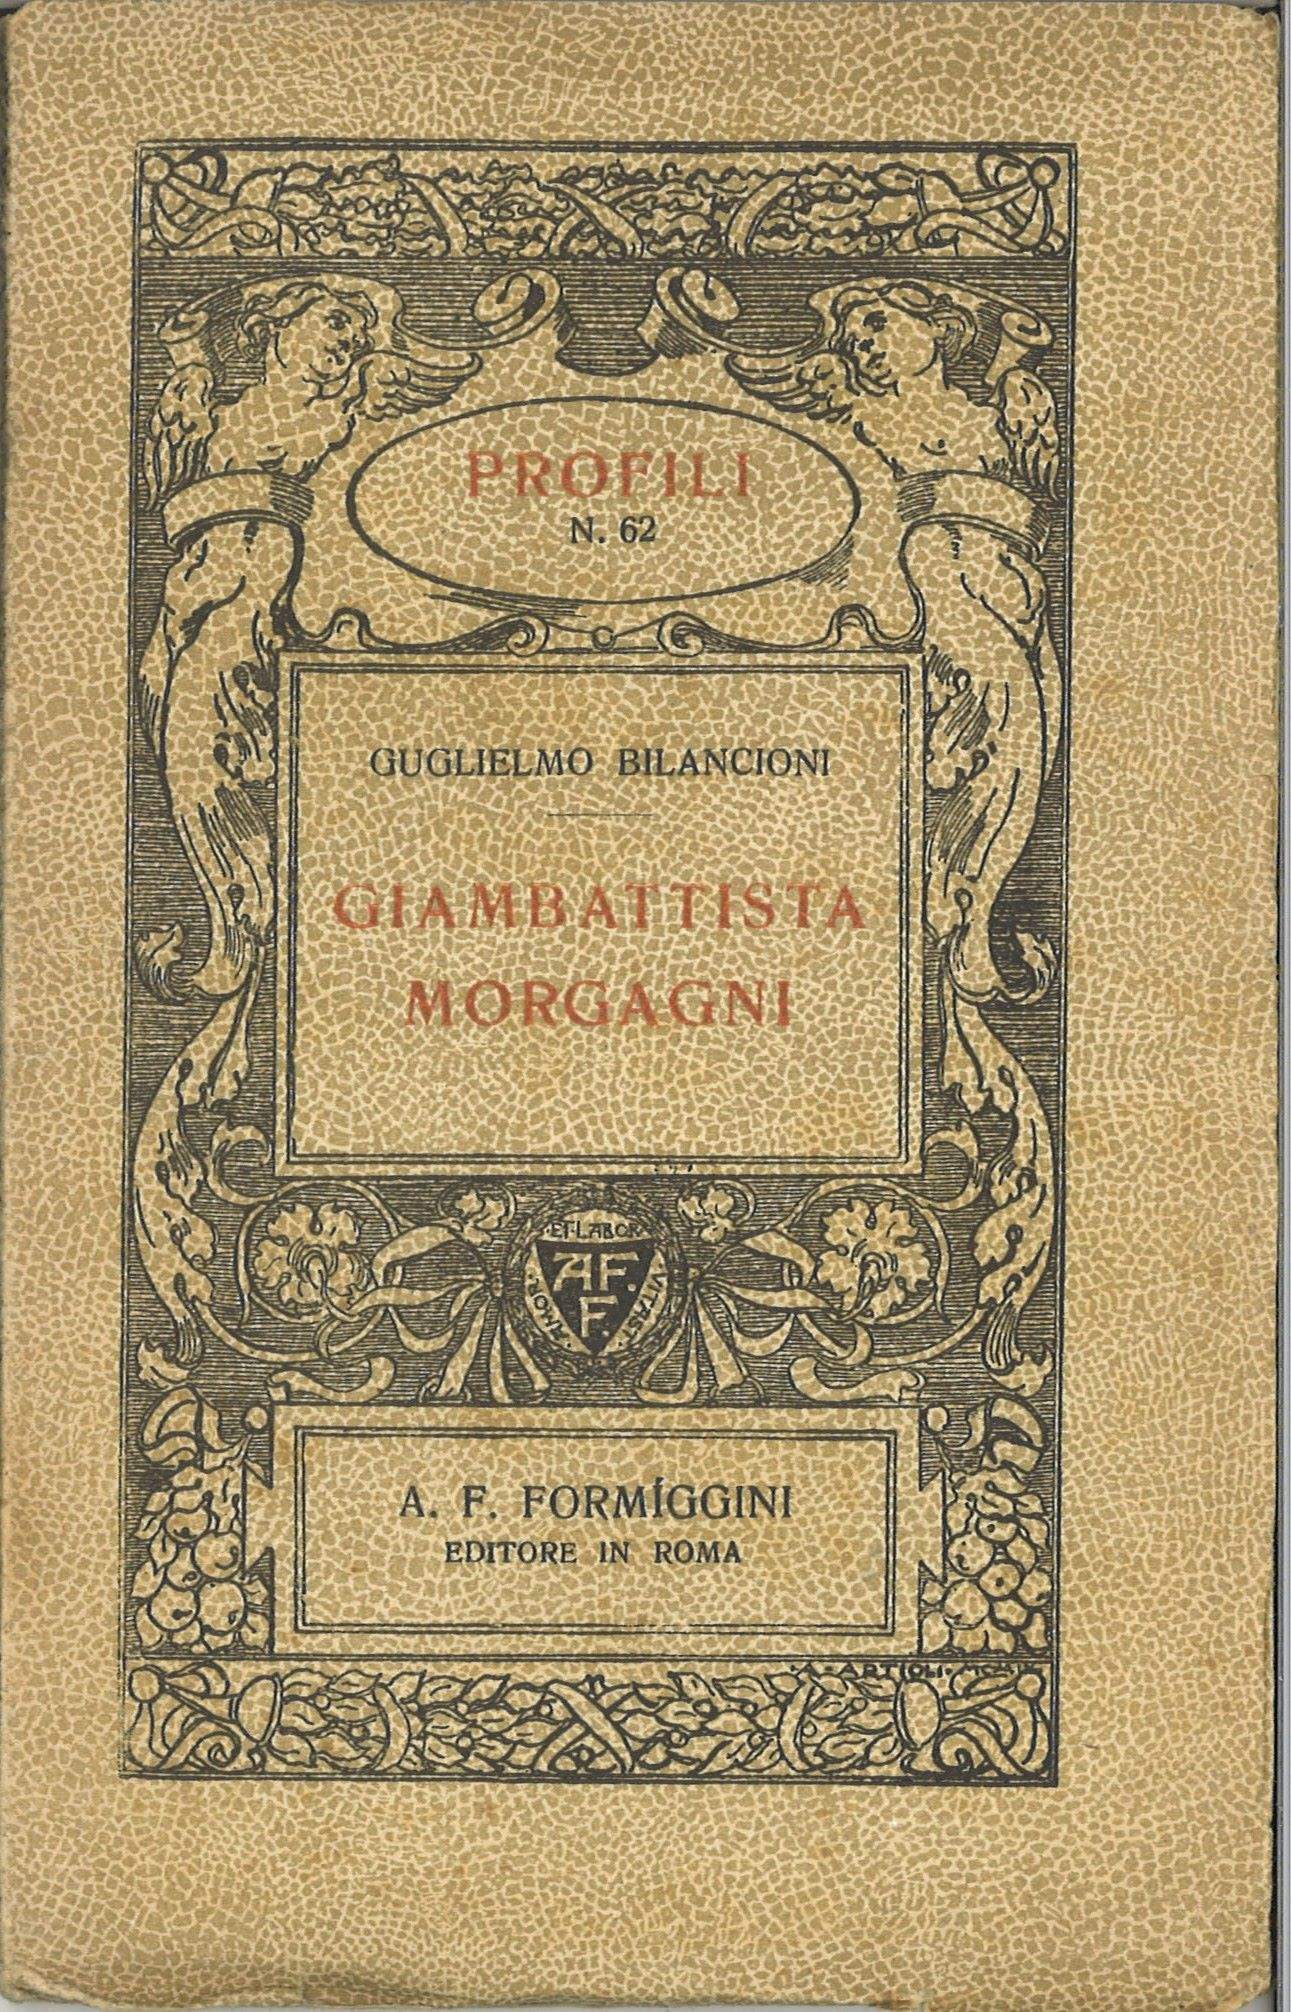 Giambattista Morgagni